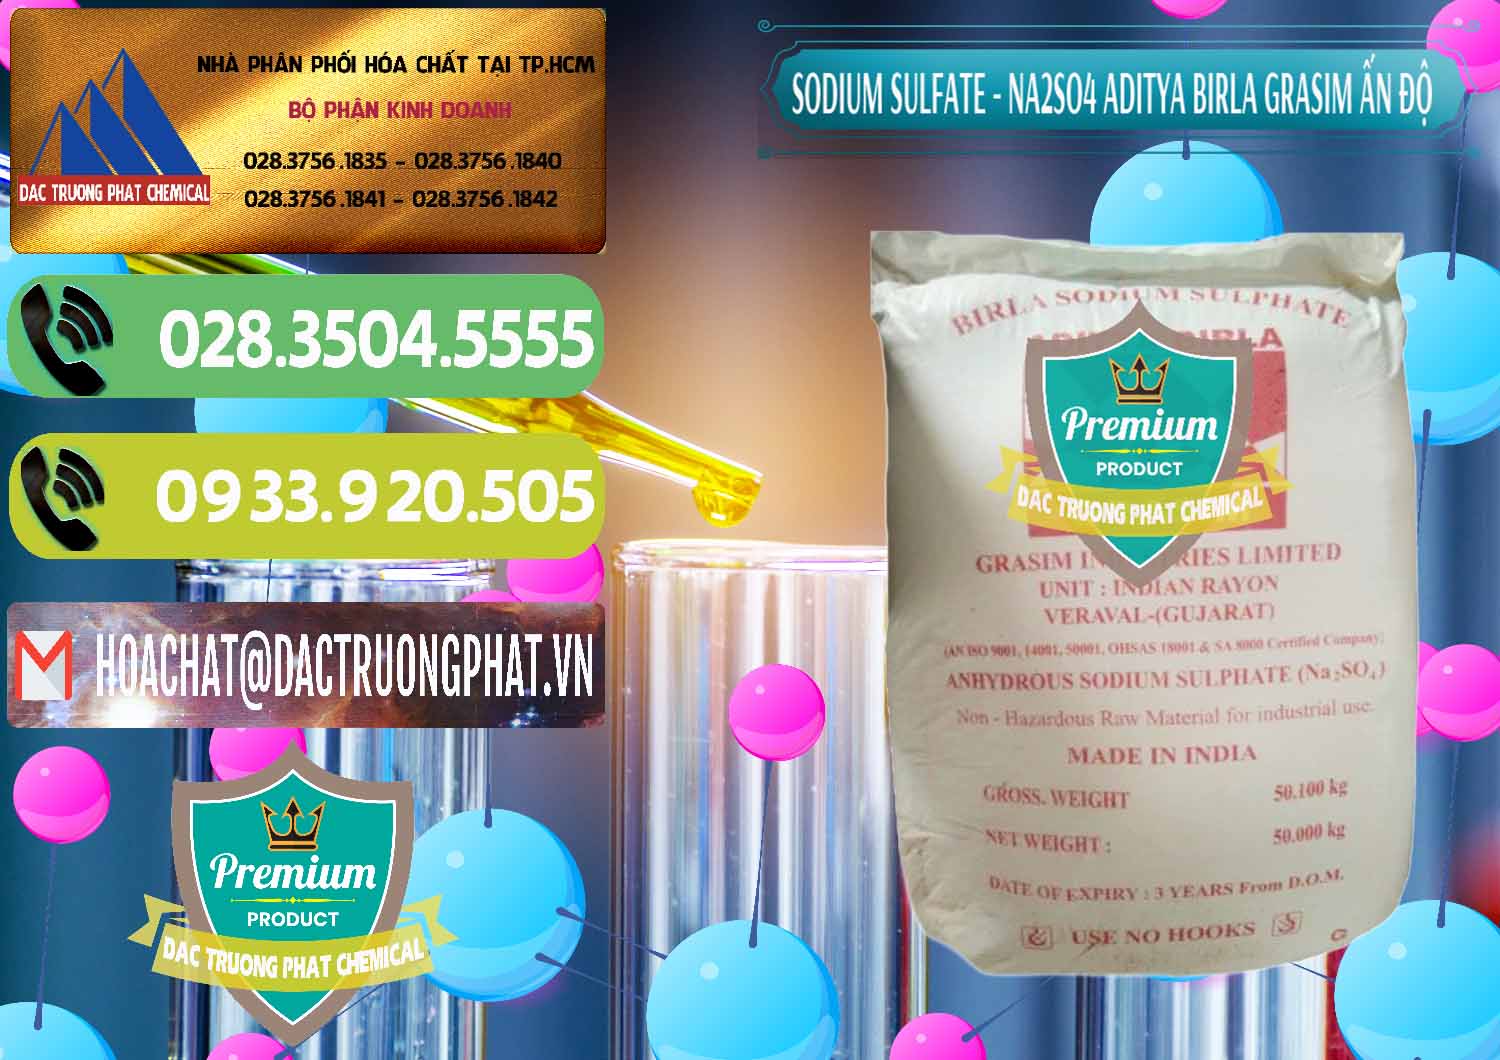 Công ty chuyên bán _ cung ứng Sodium Sulphate - Muối Sunfat Na2SO4 Grasim Ấn Độ India - 0356 - Chuyên cung cấp & bán hóa chất tại TP.HCM - hoachatmientay.vn